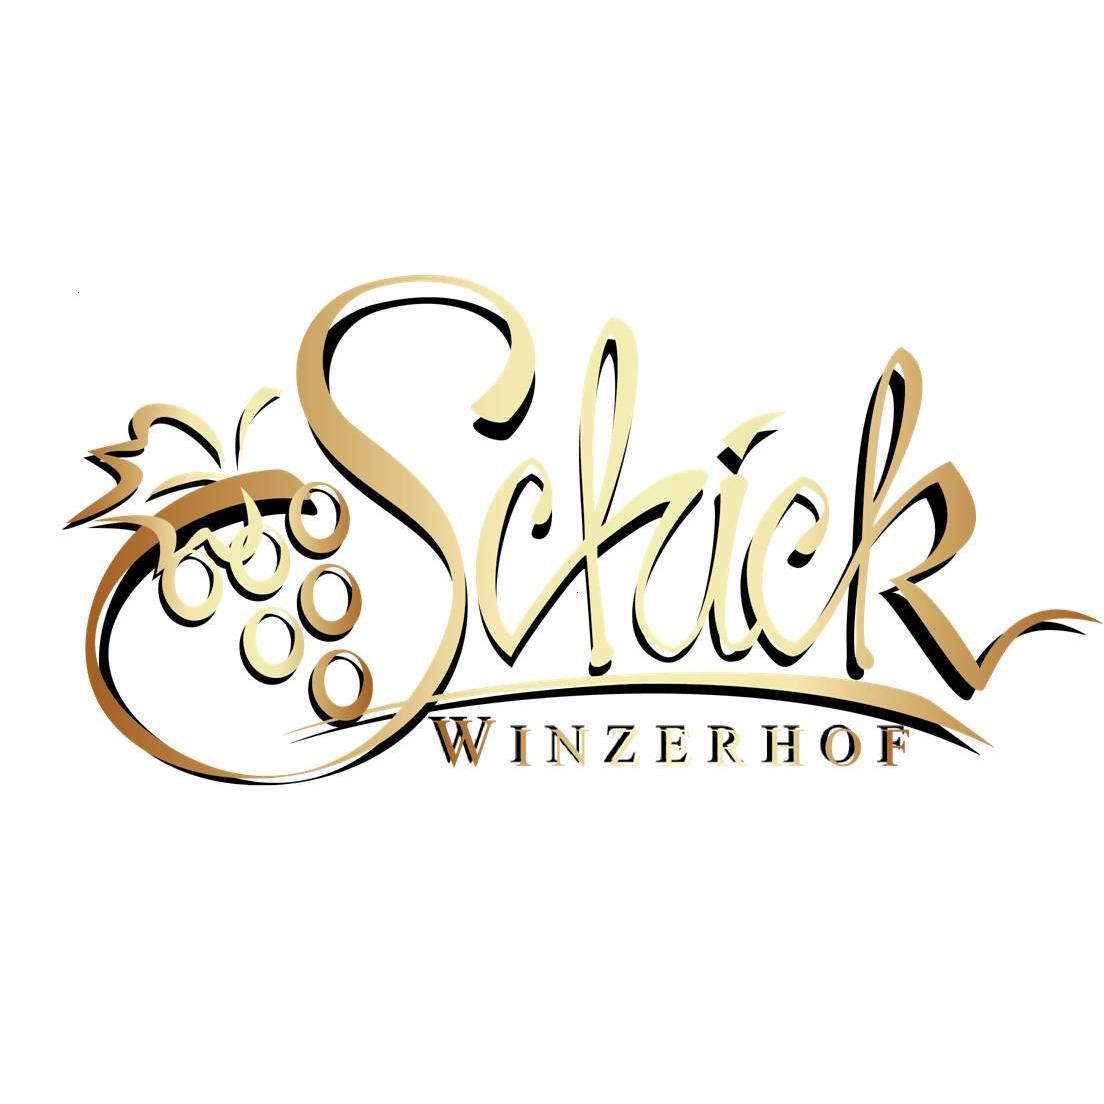 Sebastian Schick Winzerhof Schick in Zeil am Main - Logo